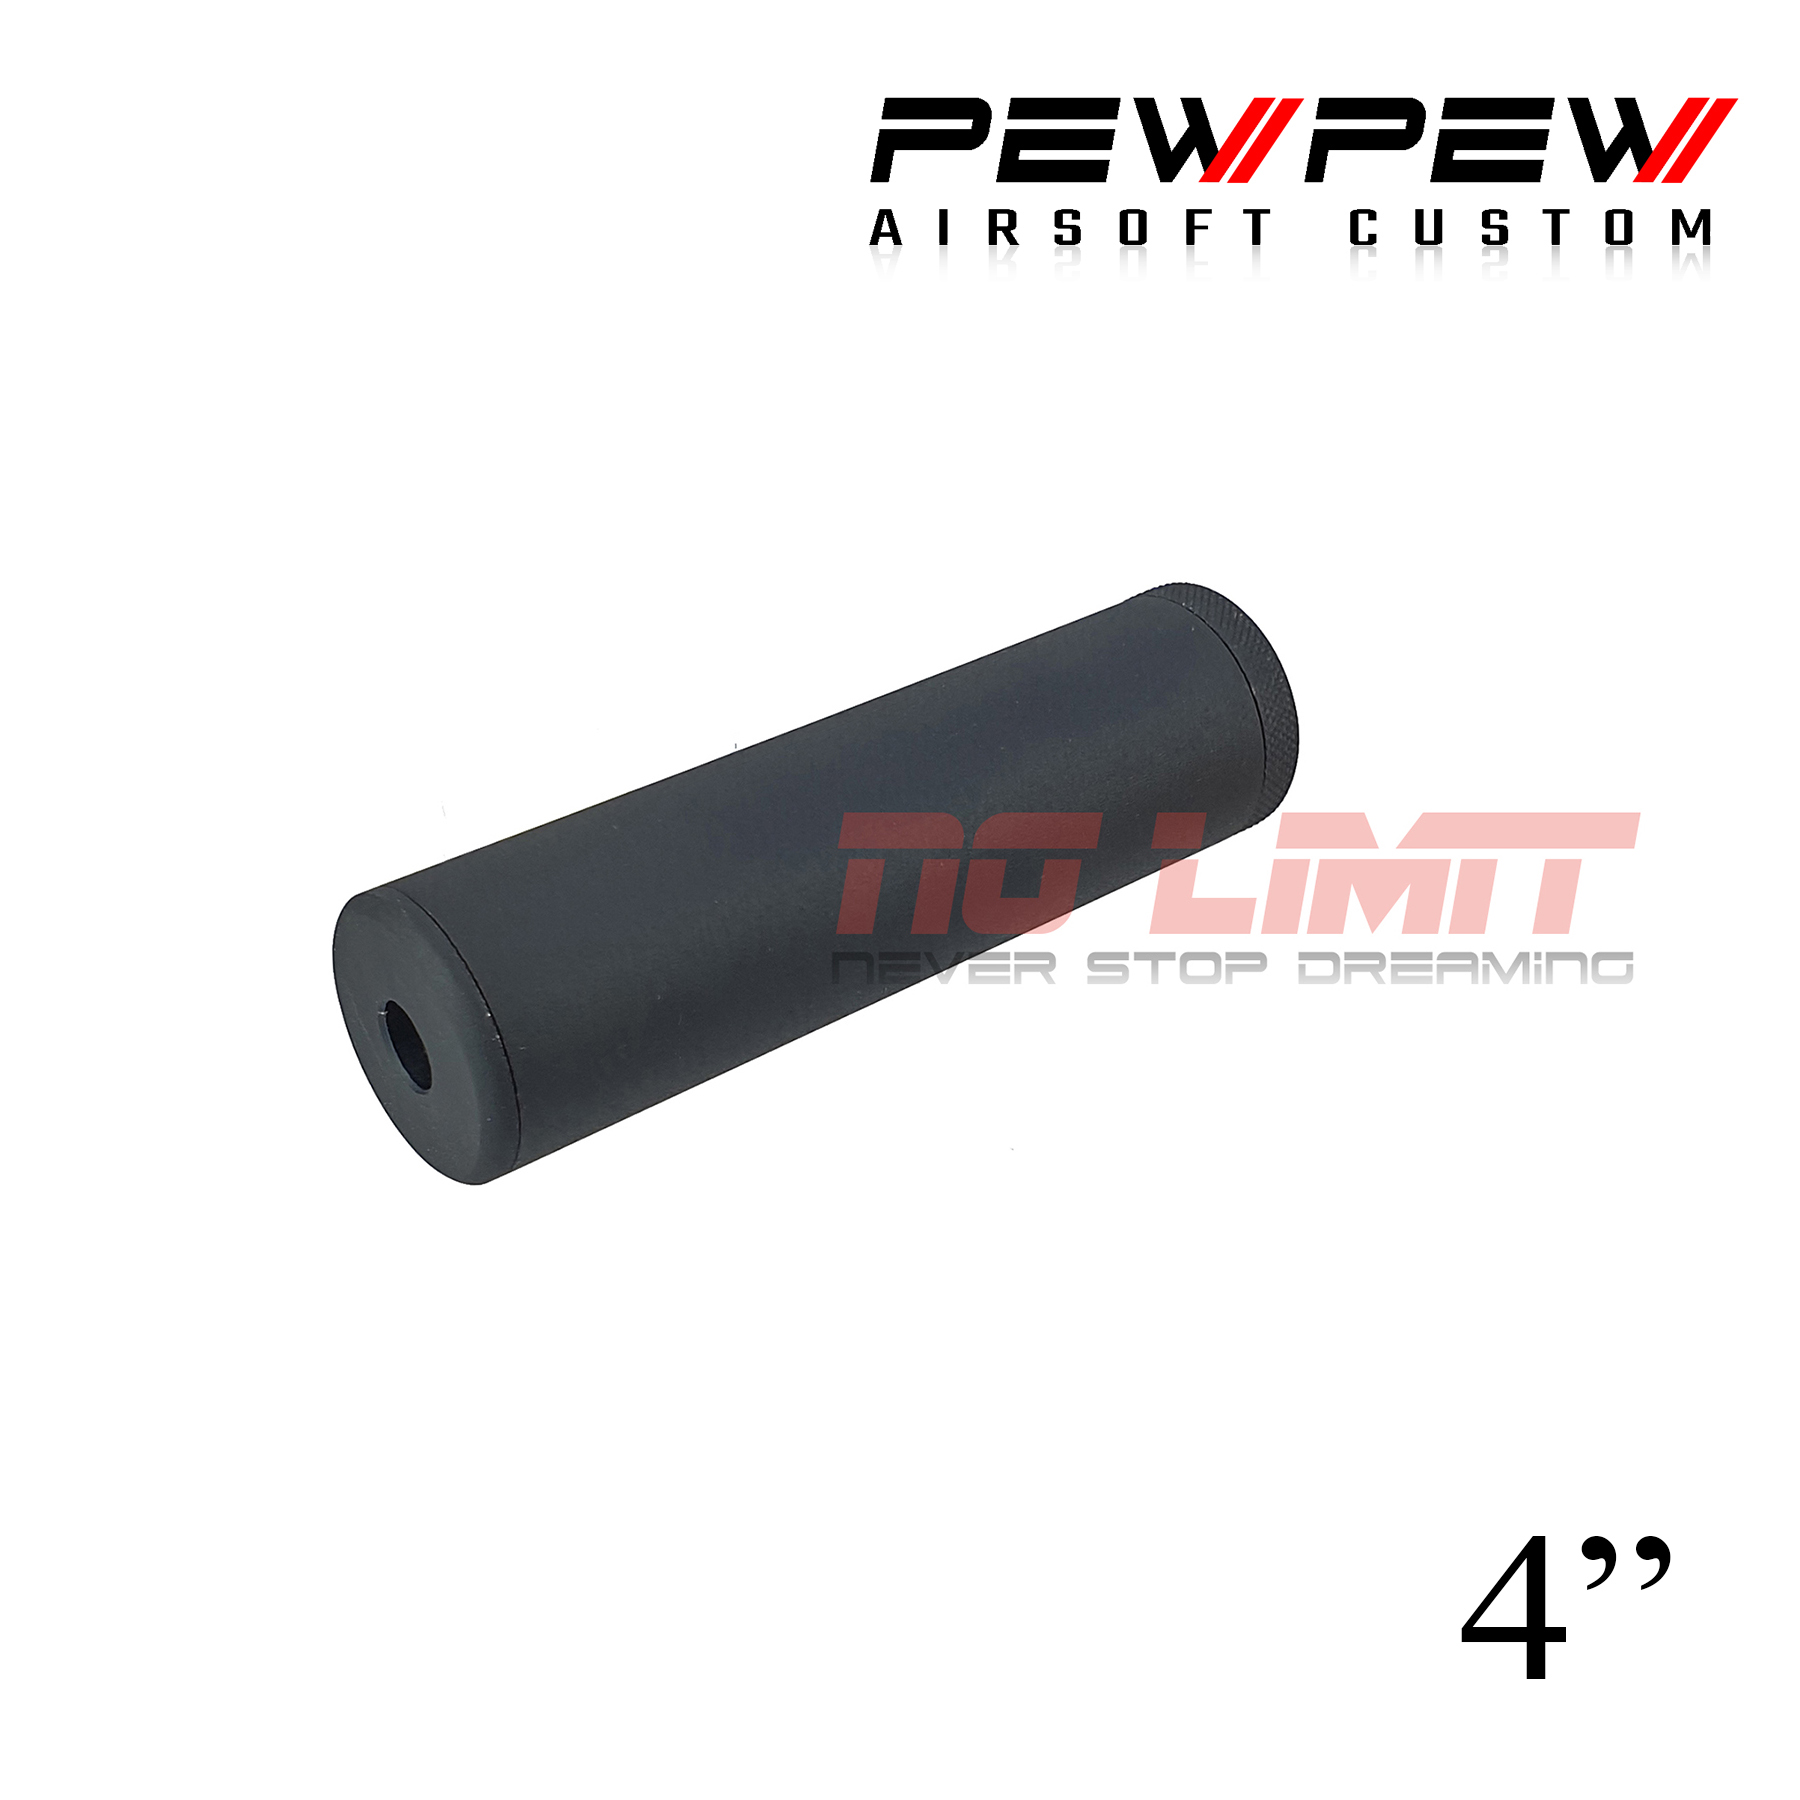 ท่อเก็บเสียง PEW PEW สำหรับปืนสั้น มีให้เลือก  3.5",  4",  5" สี ดำ และ เงินโครม ทำจากอลูมิเนียม ด้านในมีท่อประคอง